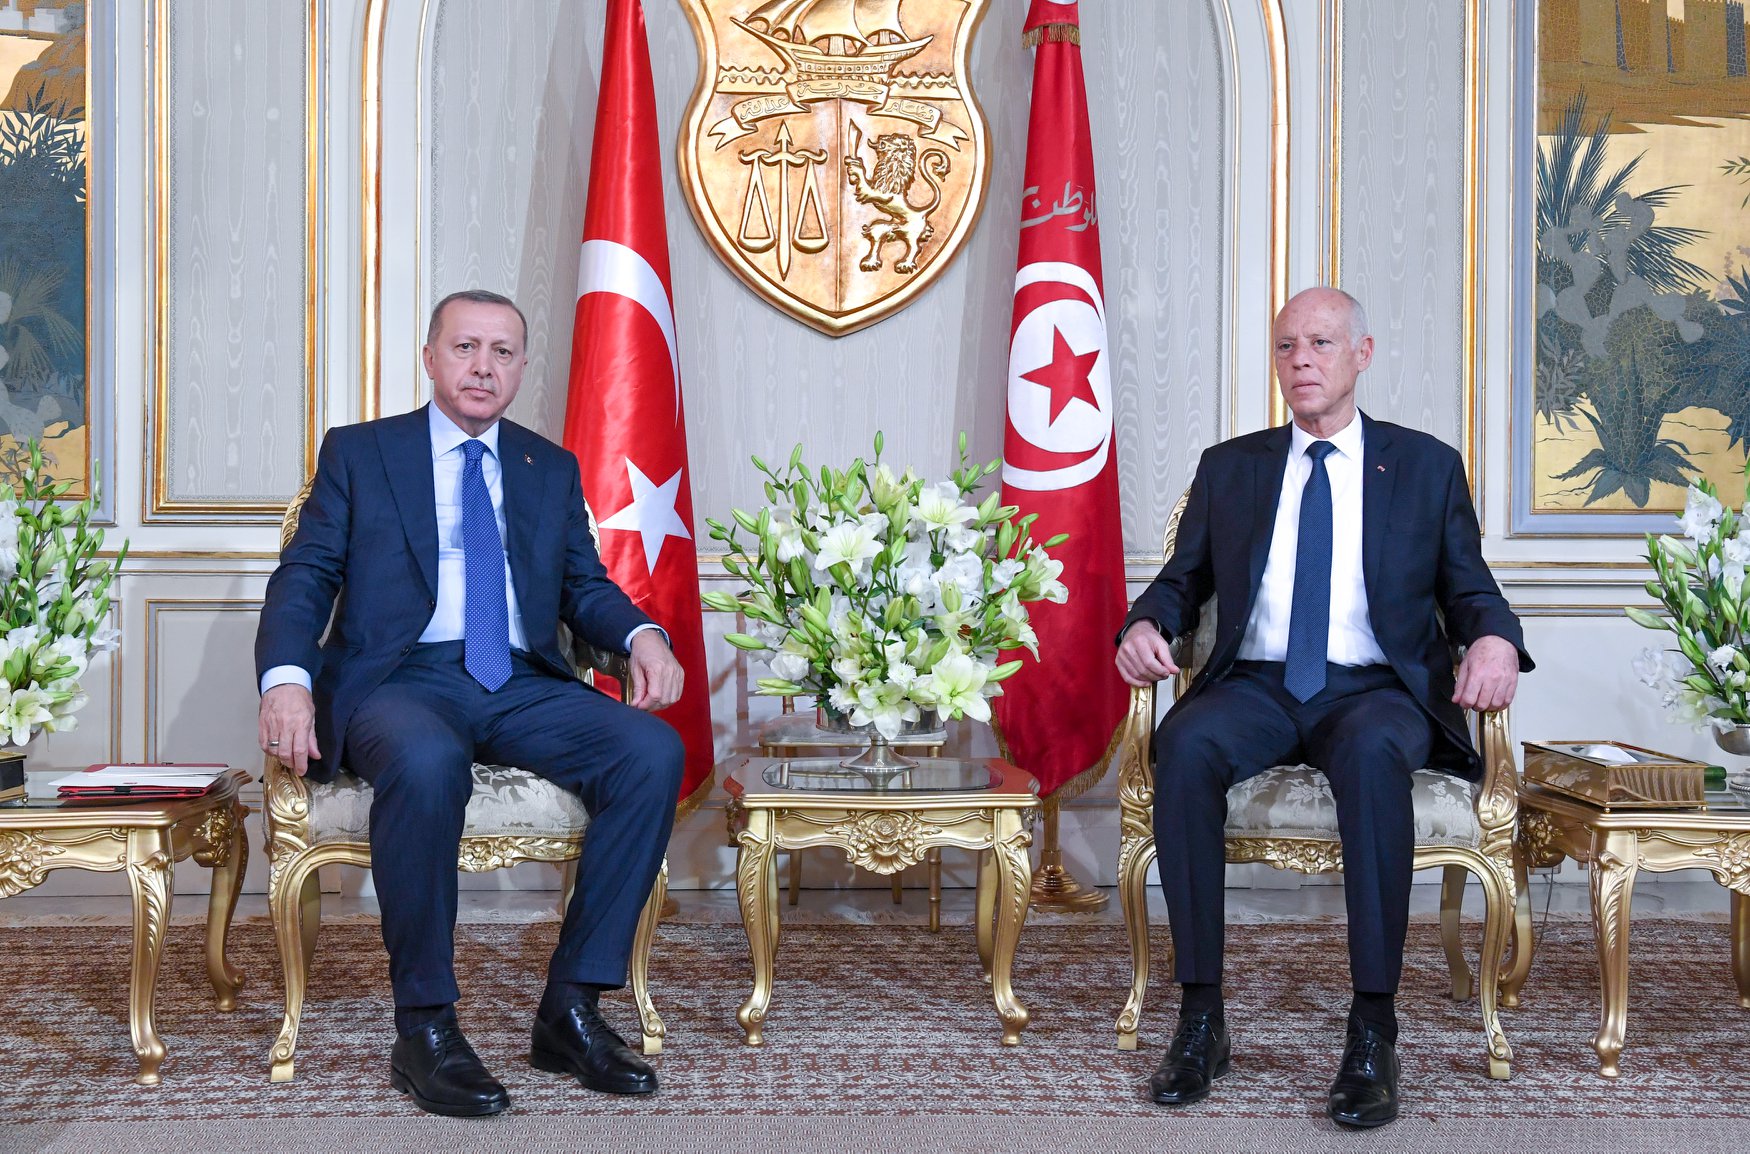 Οριστική (;) άρνηση της Τυνησίας στην Τουρκία για συμμαχία – Πλήγμα στον σχεδιασμό της Άγκυρας